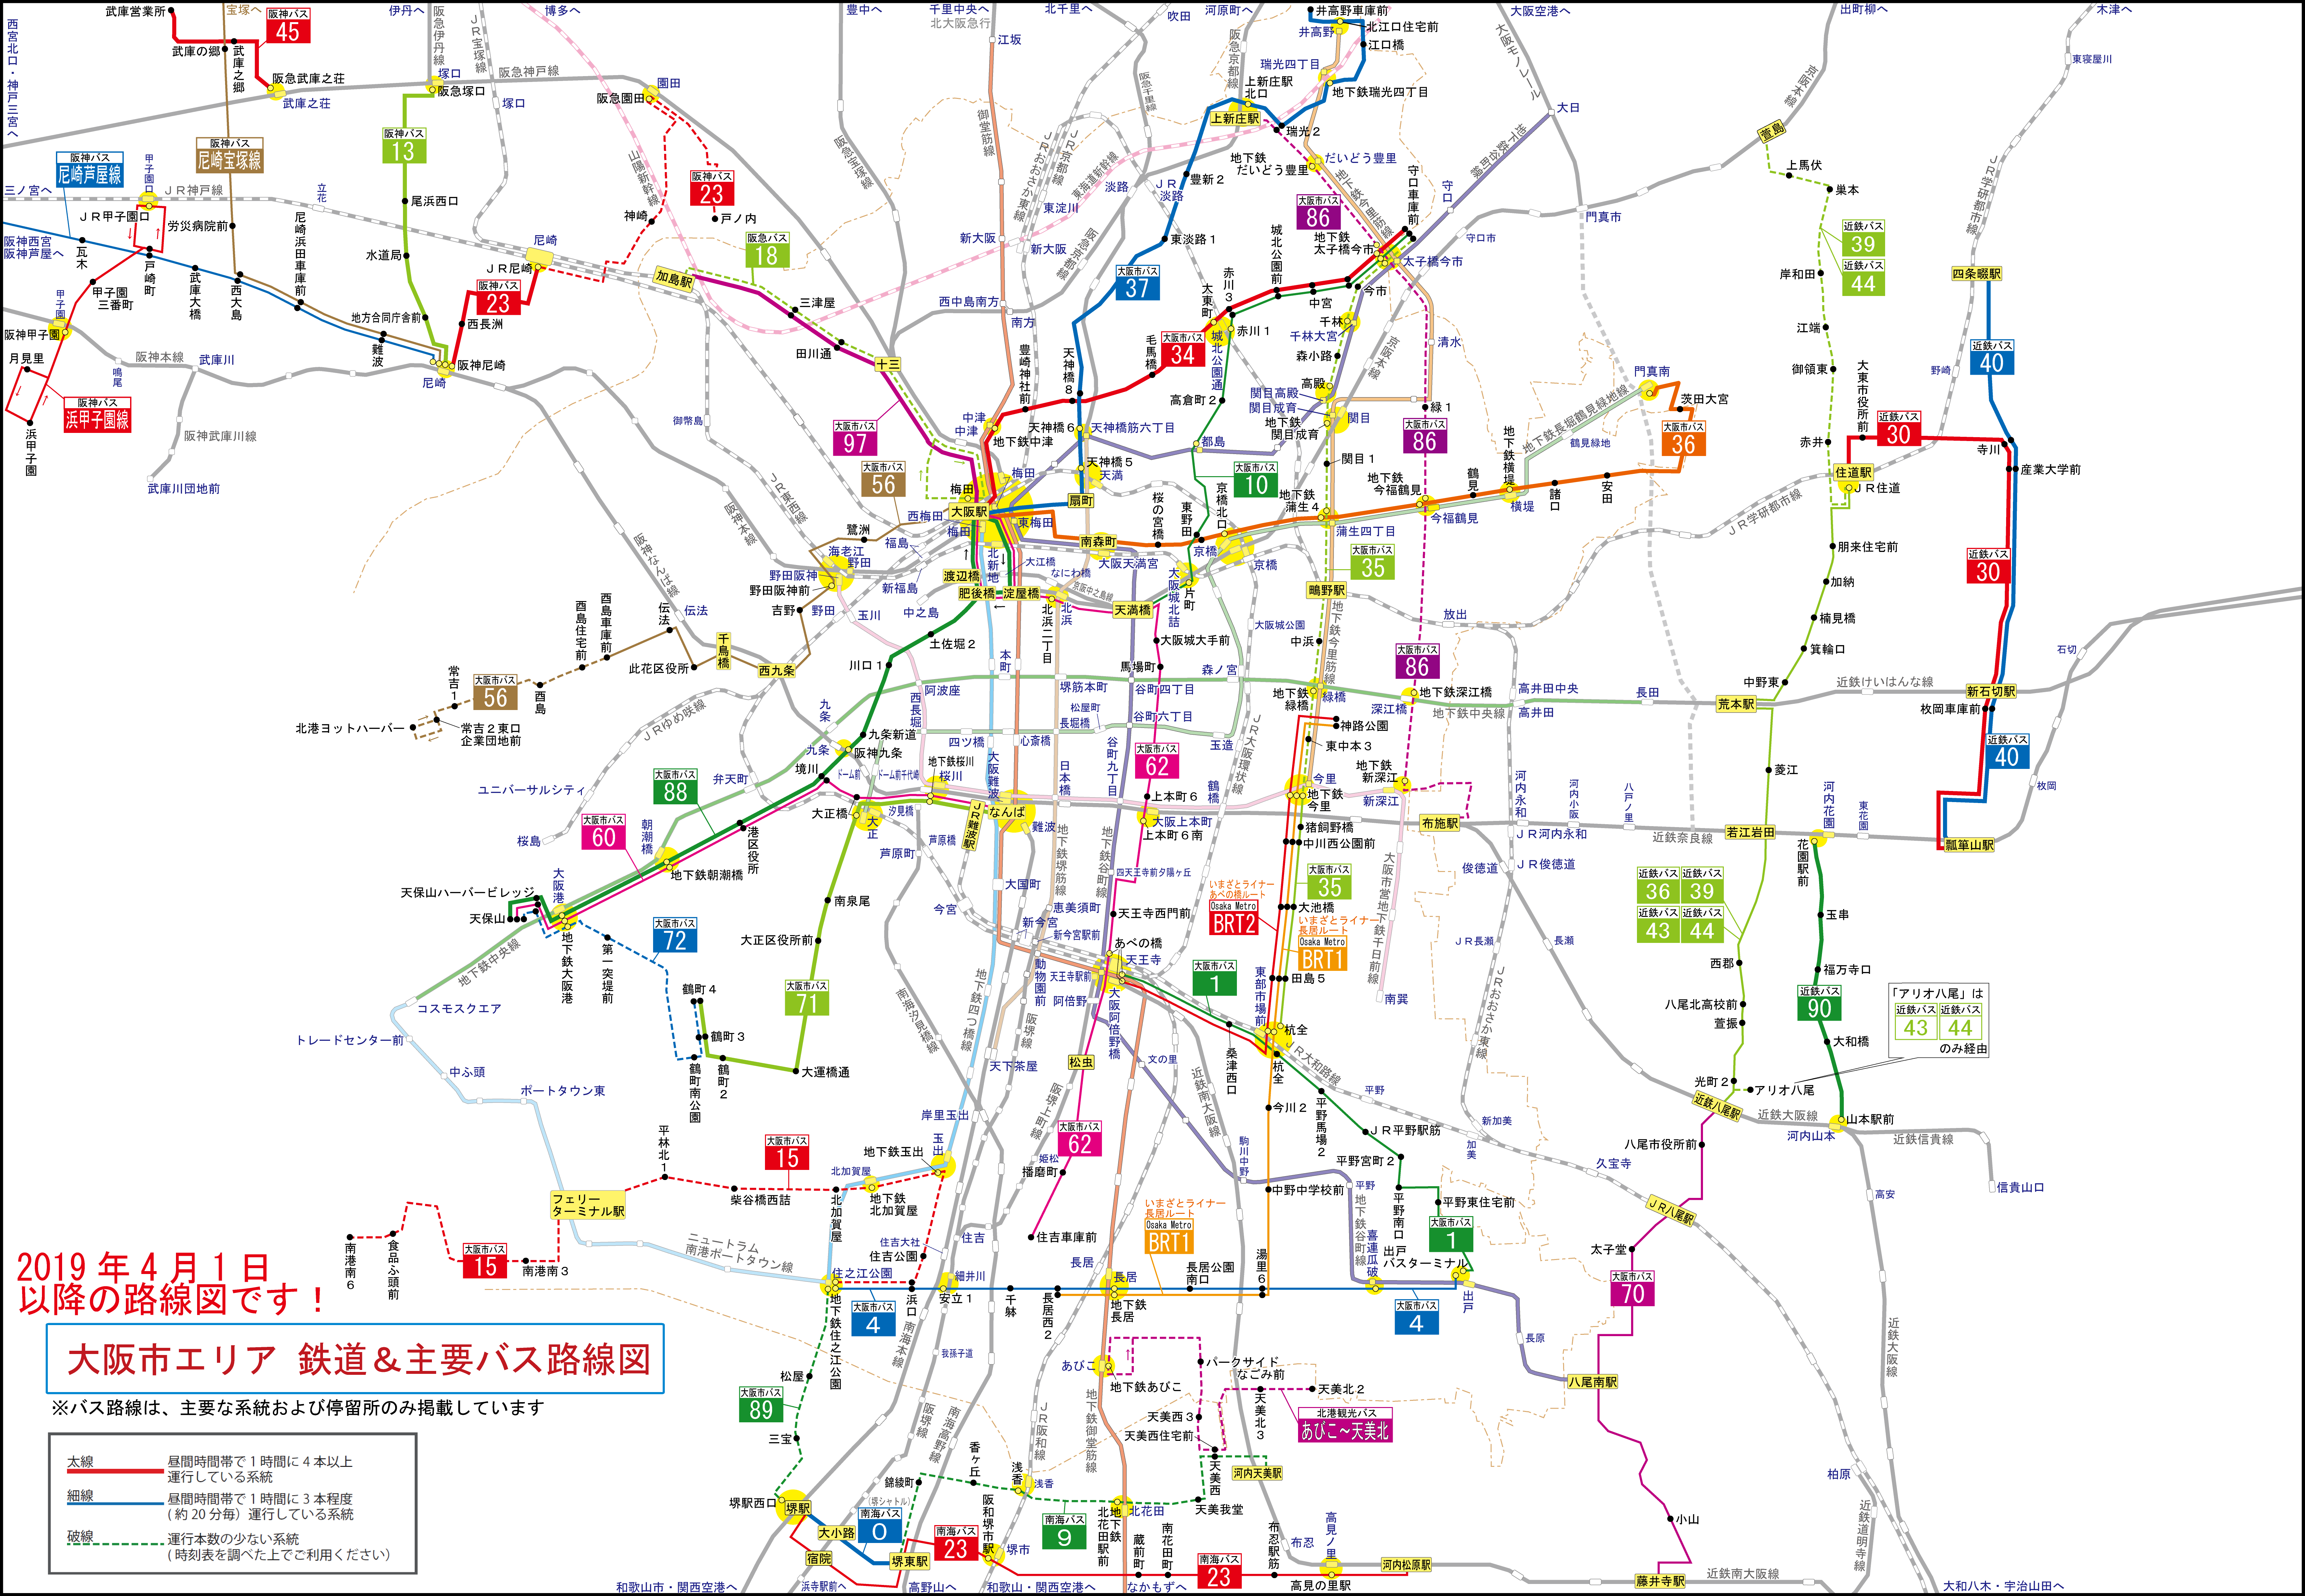 路線 図 メトロ 地下鉄 大阪 地下鉄ドアの「魚」、実は路線図だった！ 大阪、目玉の位置は交通局